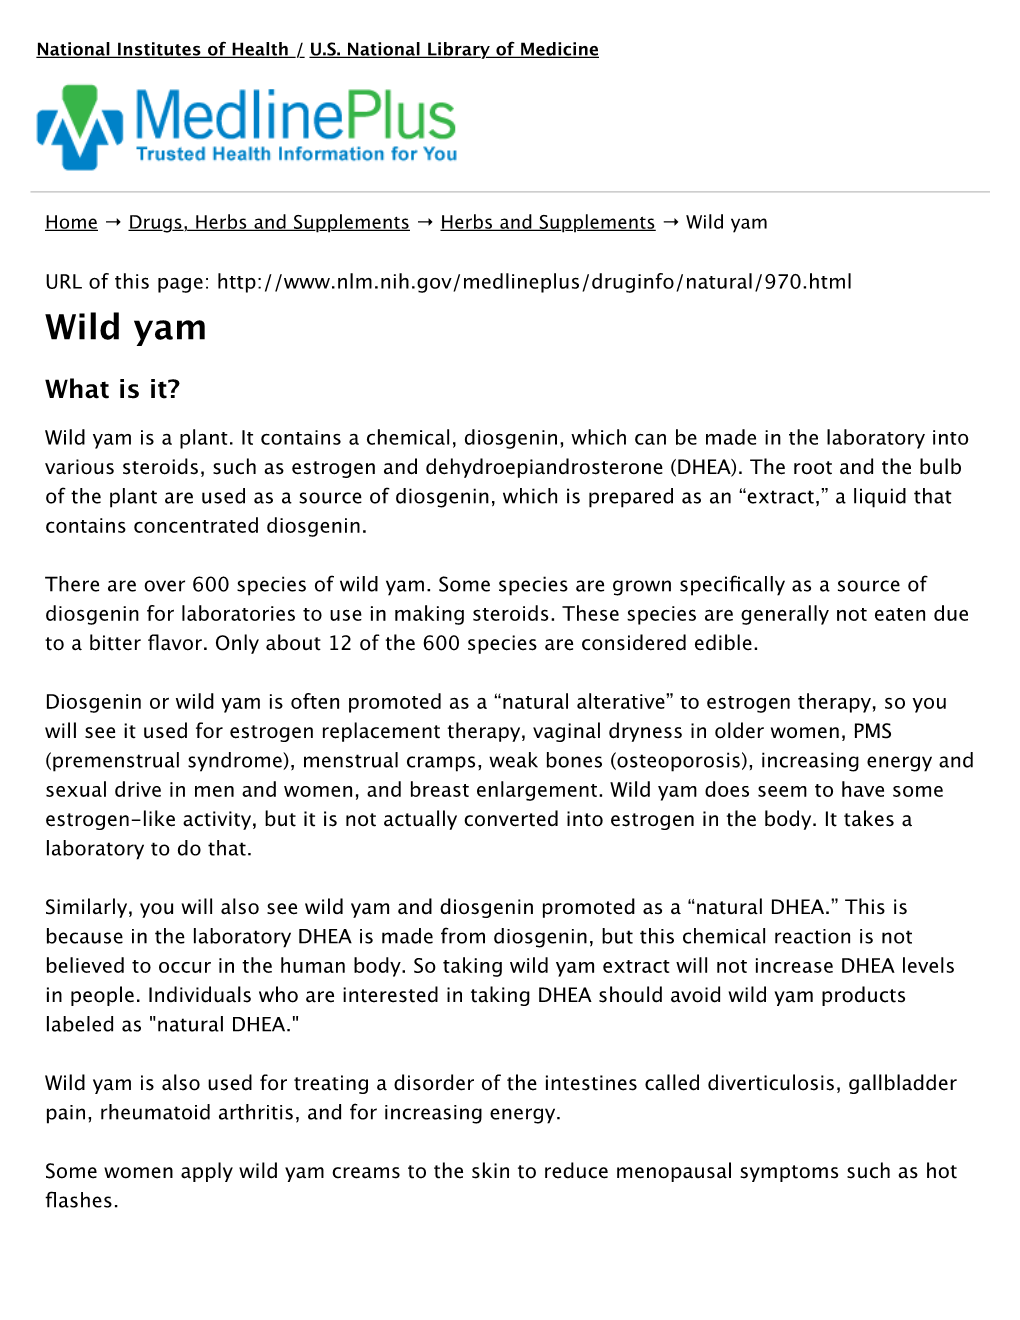 Wild Yam: Medlineplus Supplements